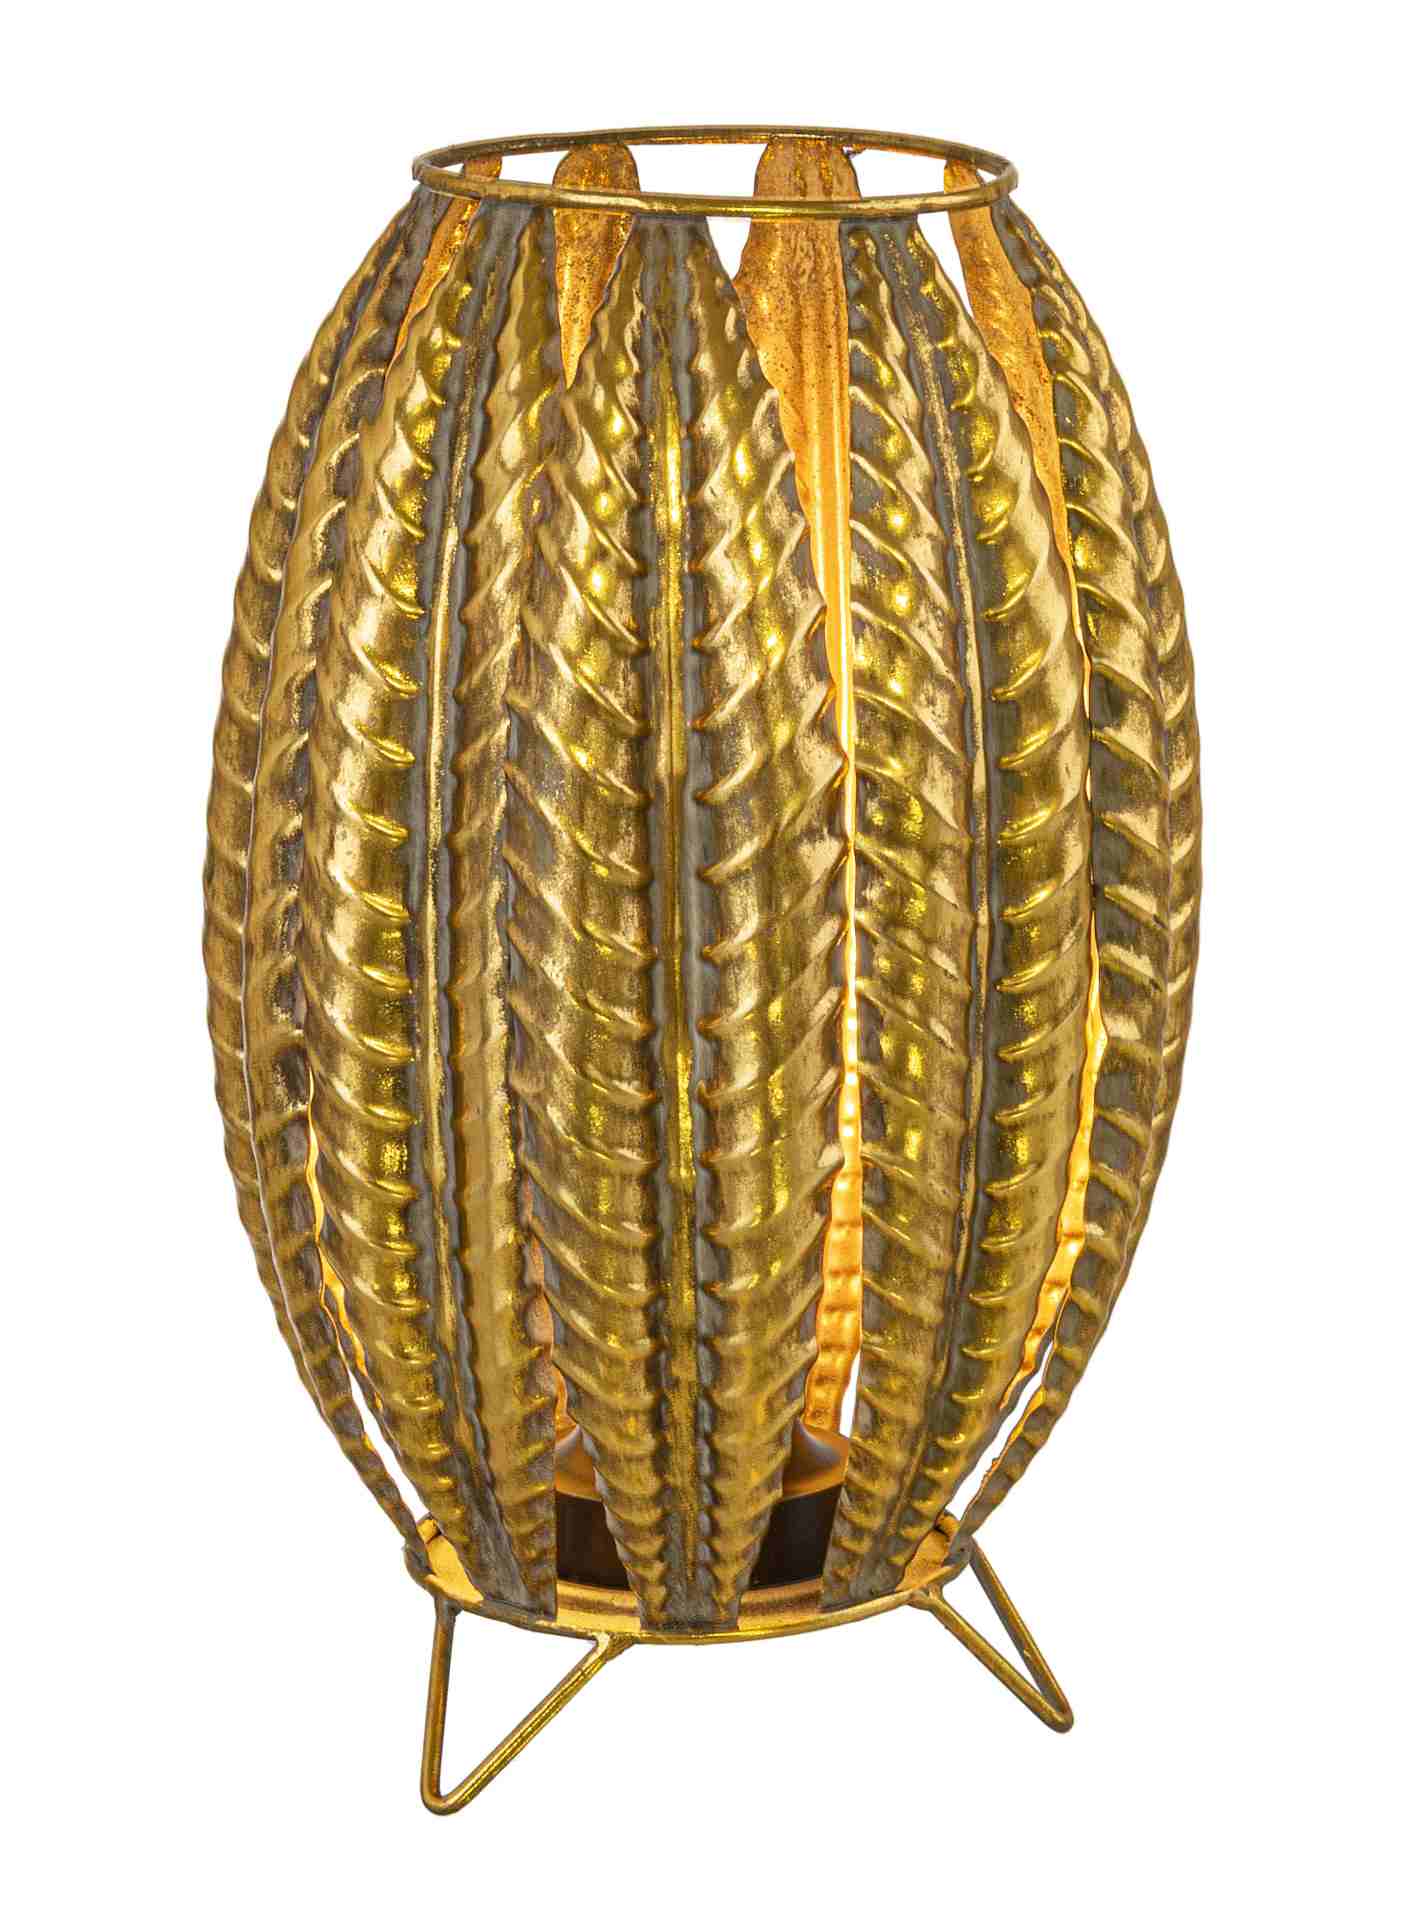 Die Tischleuchte Tarfaya überzeugt mit ihrem klassischen Design. Gefertigt wurde sie aus Metall, welches einen goldenen Farbton besitzt. Der Lampenschirm ist auch aus Metall und hat eine goldene Farbe. Die Lampe besitzt eine Höhe von 32,5 cm.